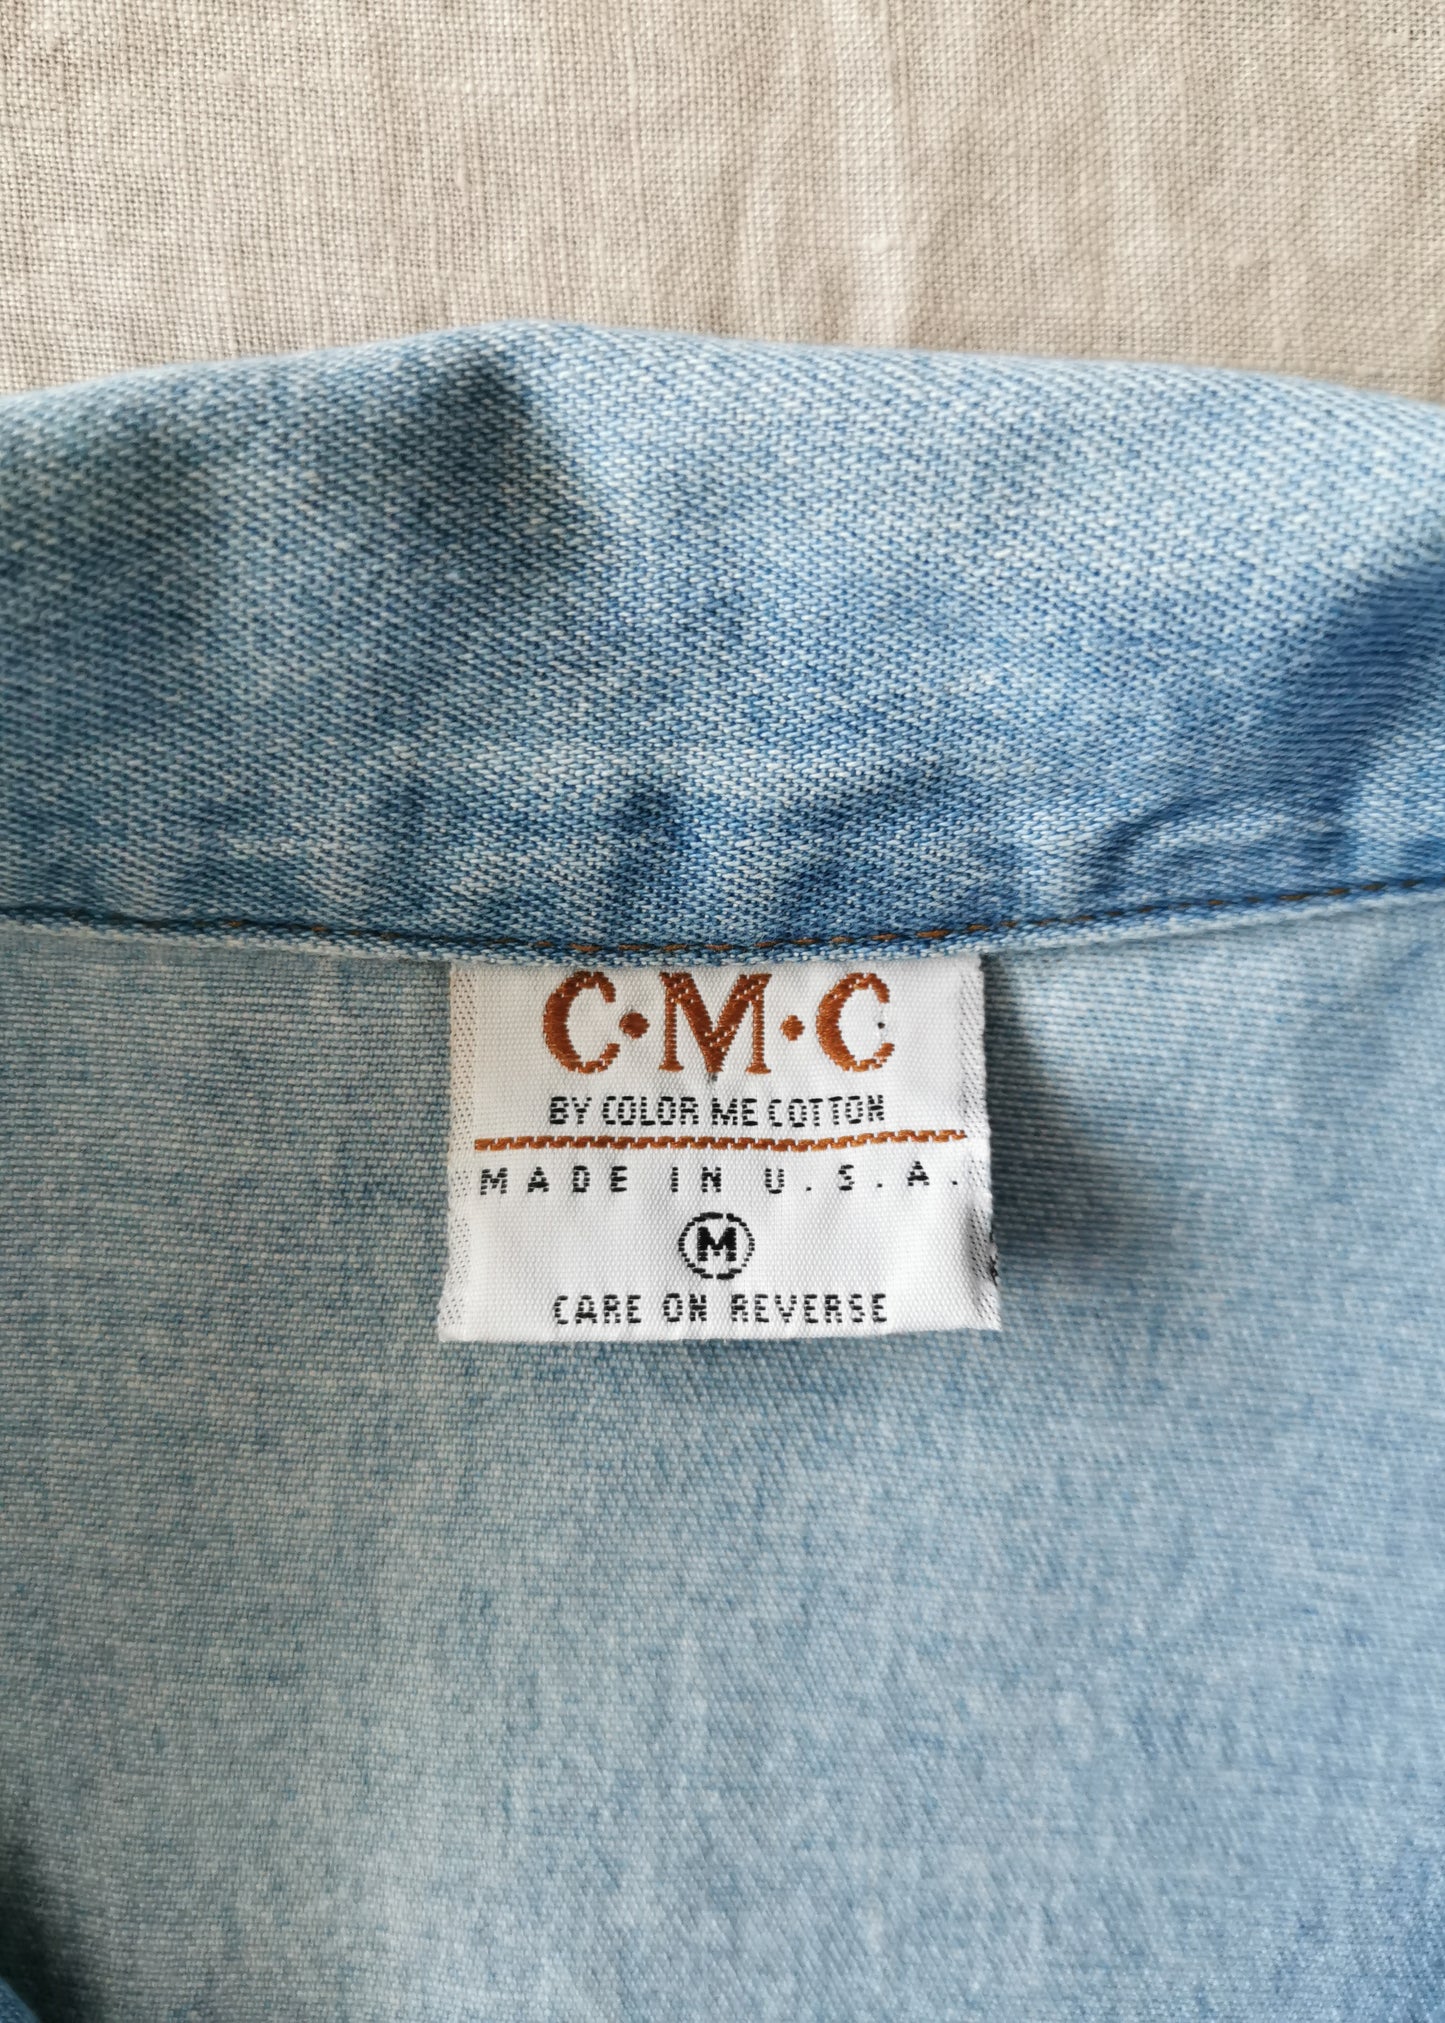 Color Me Cotton Denim Fringe Shirt (M)